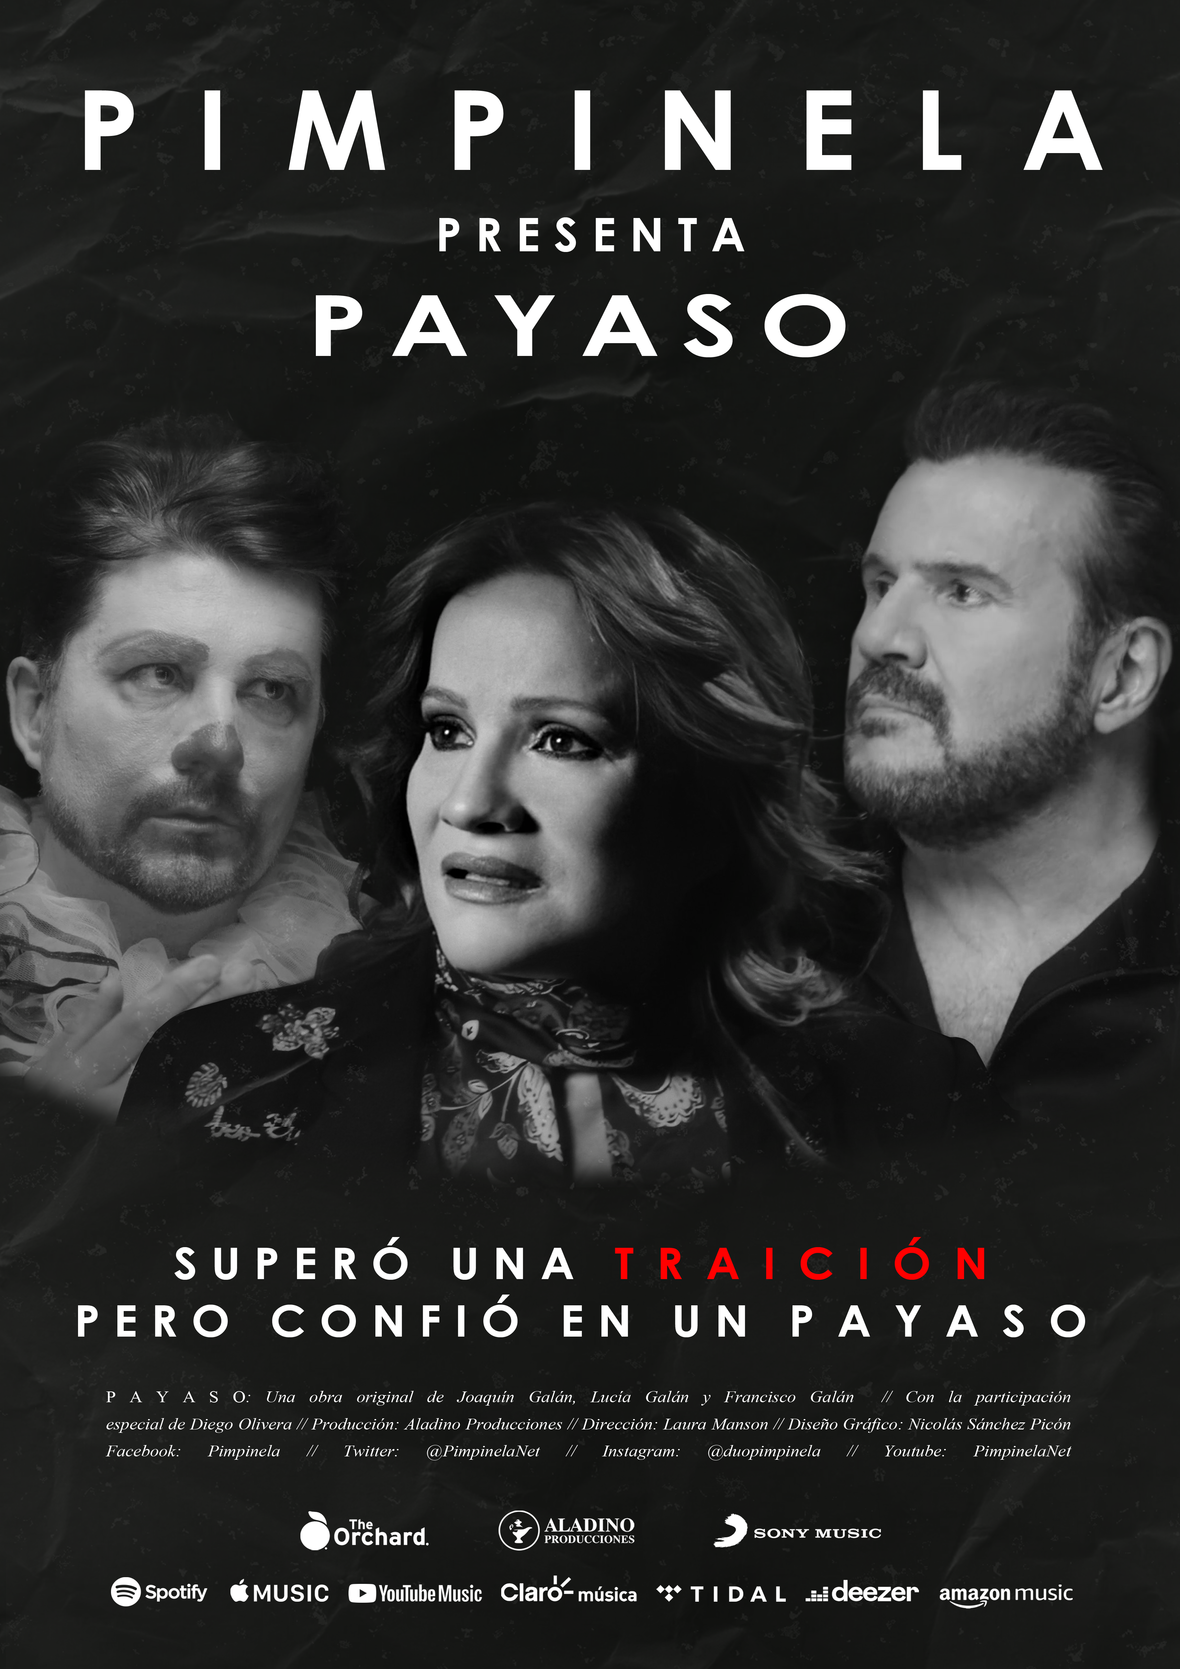 Pimpinela presenta su nuevo video “Payaso” con la participación especial de Diego Olivera